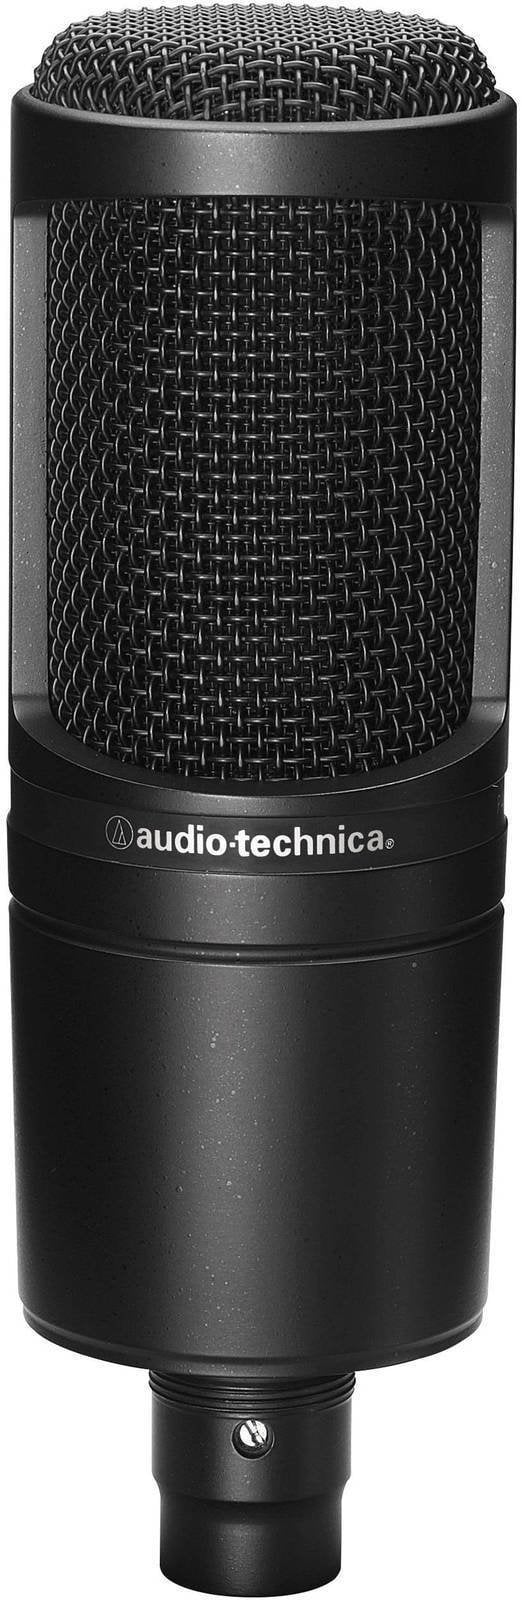 Mikrofon pojemnosciowy studyjny Audio-Technica AT2020 Mikrofon pojemnosciowy studyjny